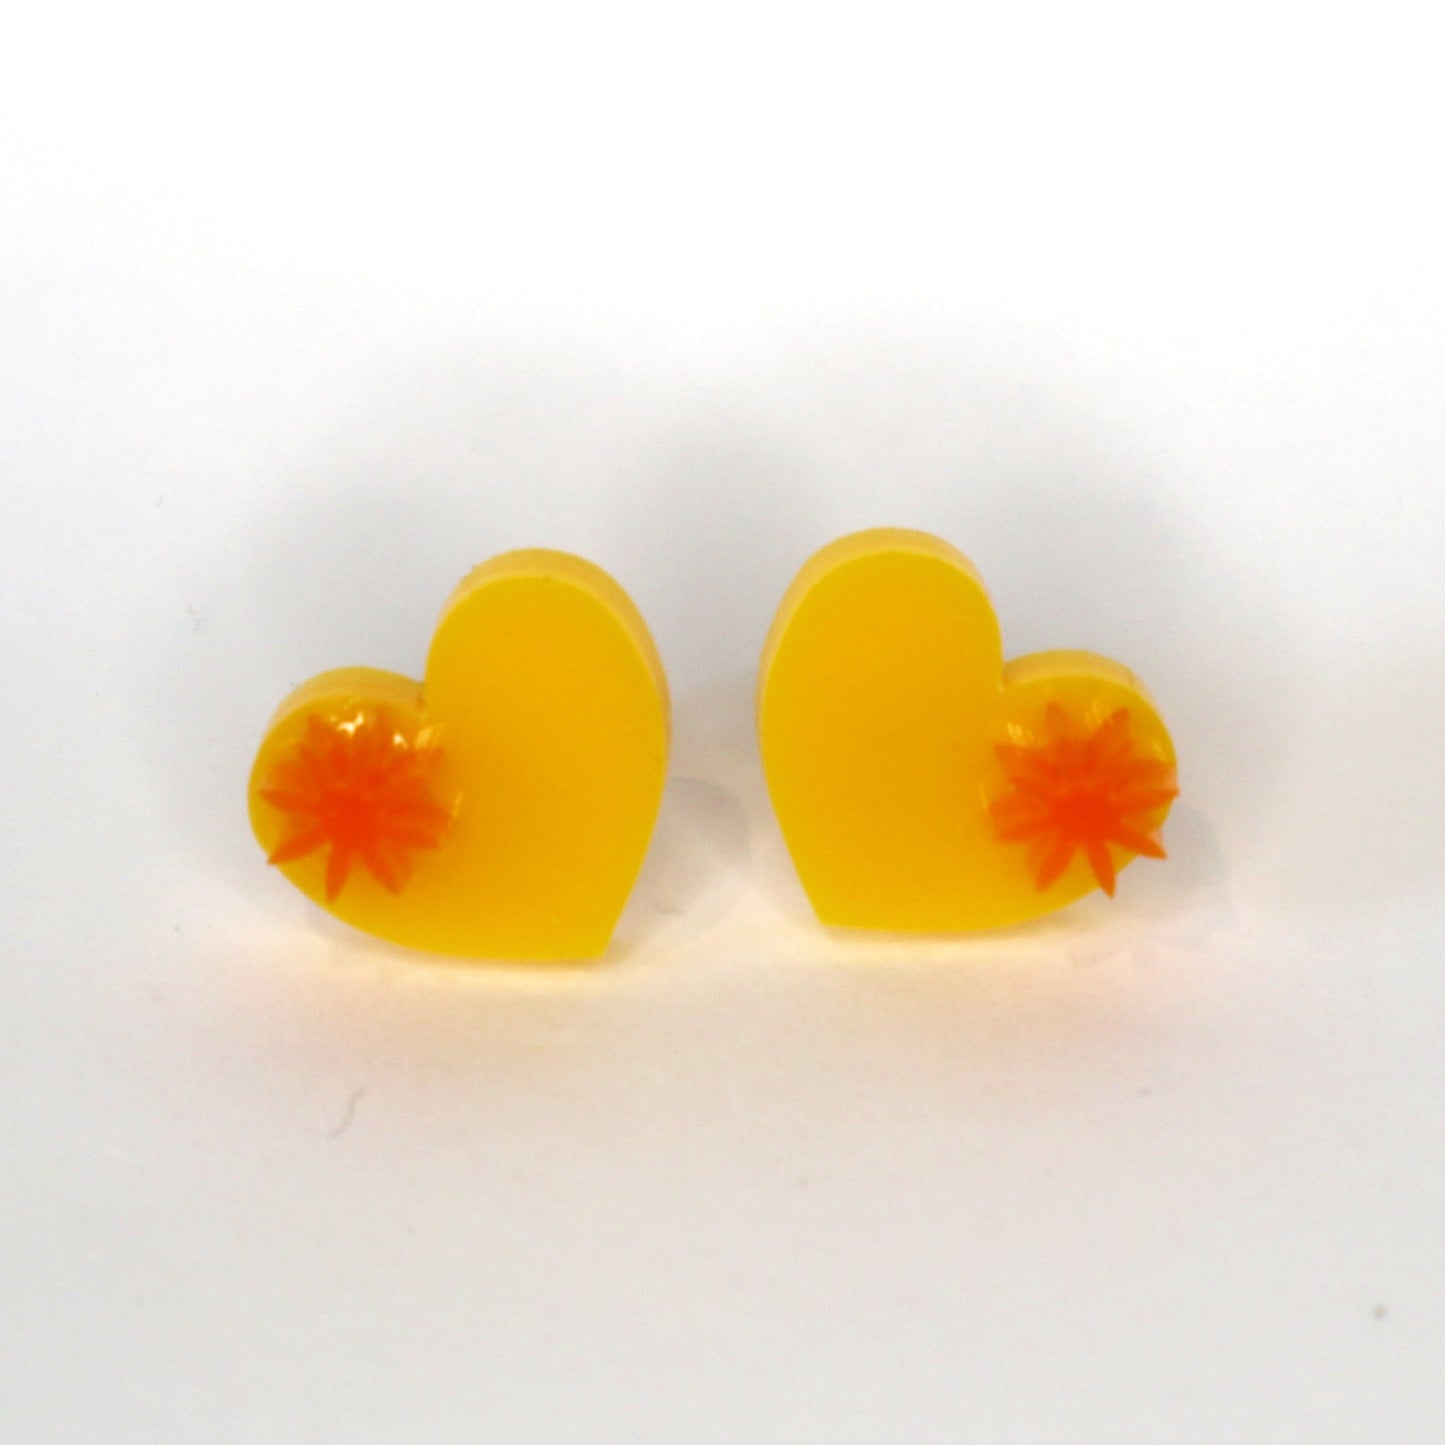 Heart laser cut acrylic earrings - yellow